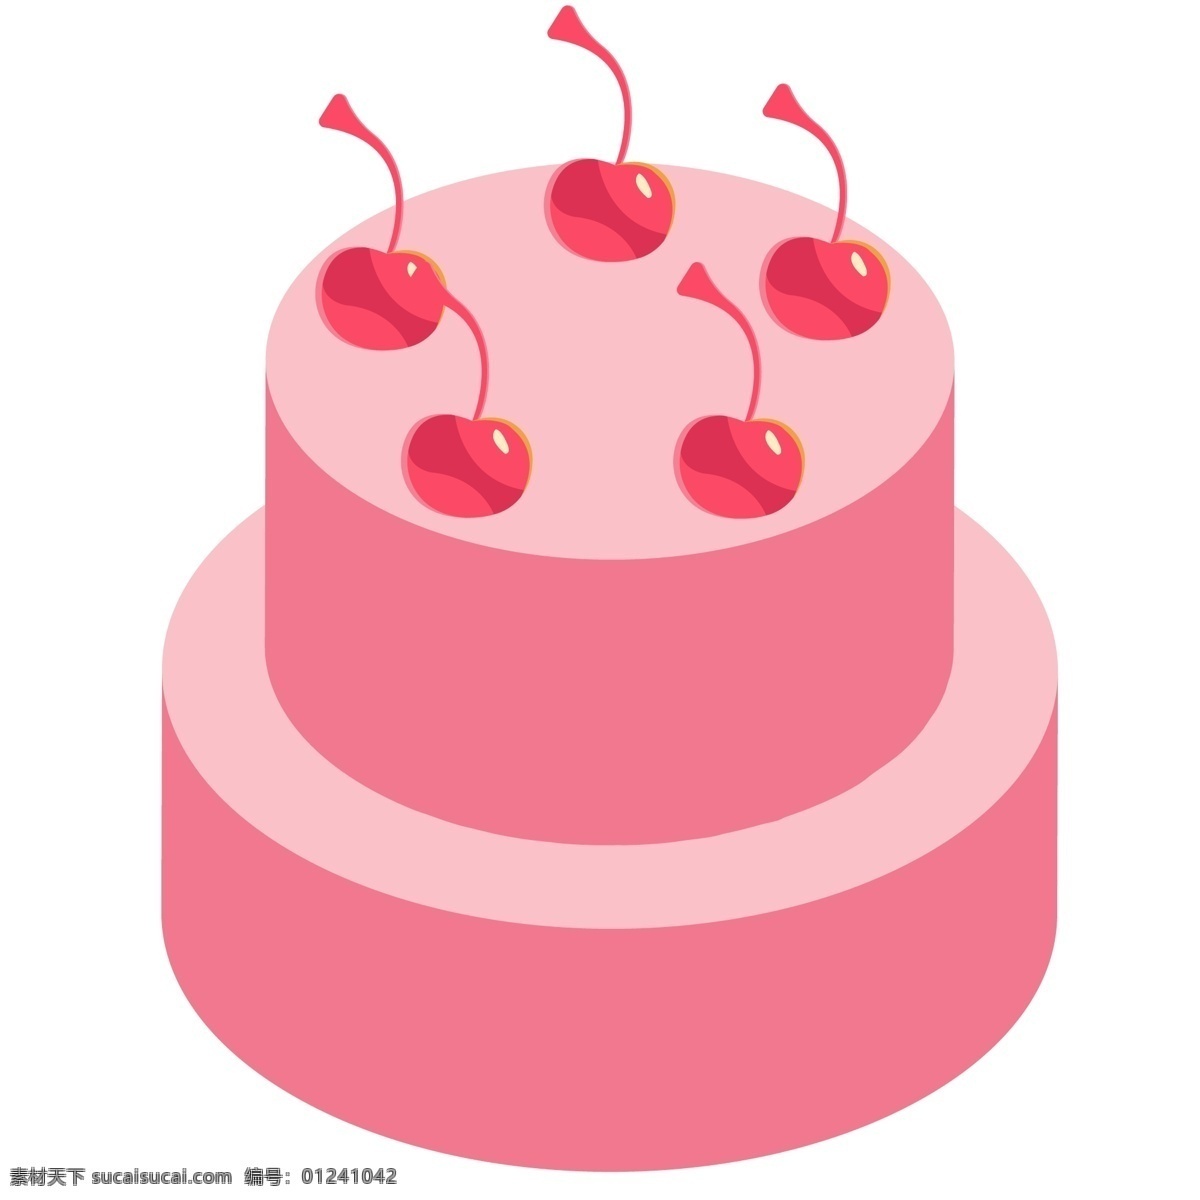 一个 粉色 的卡 通 蛋糕 美食 食物 糕点食物 生日蛋糕 过生日 生日图案